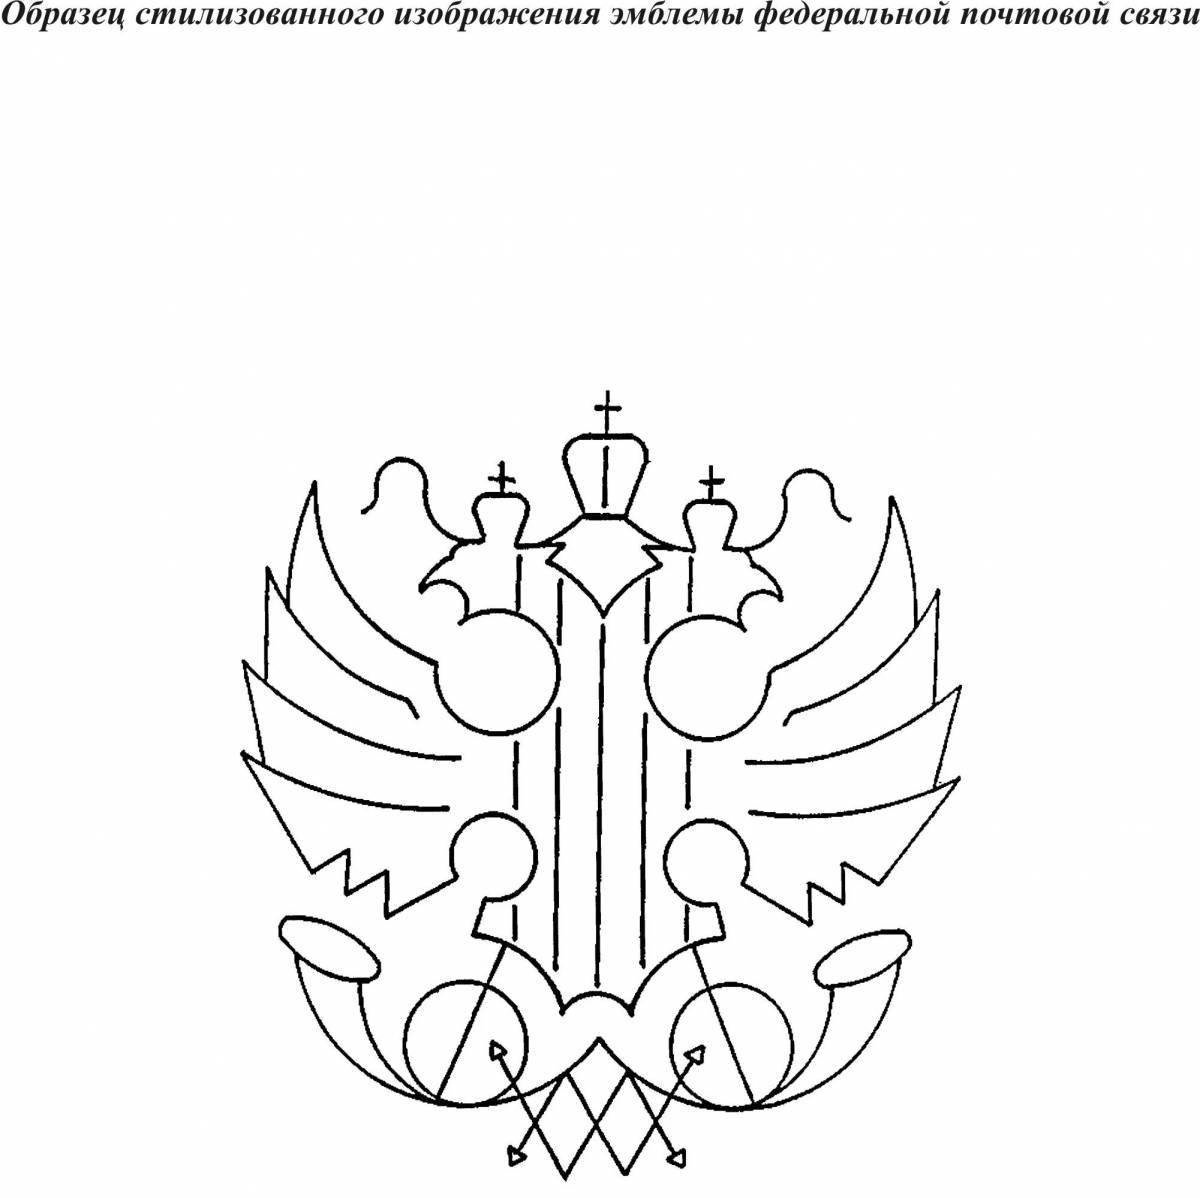 Большой герб российской федерации для юниоров